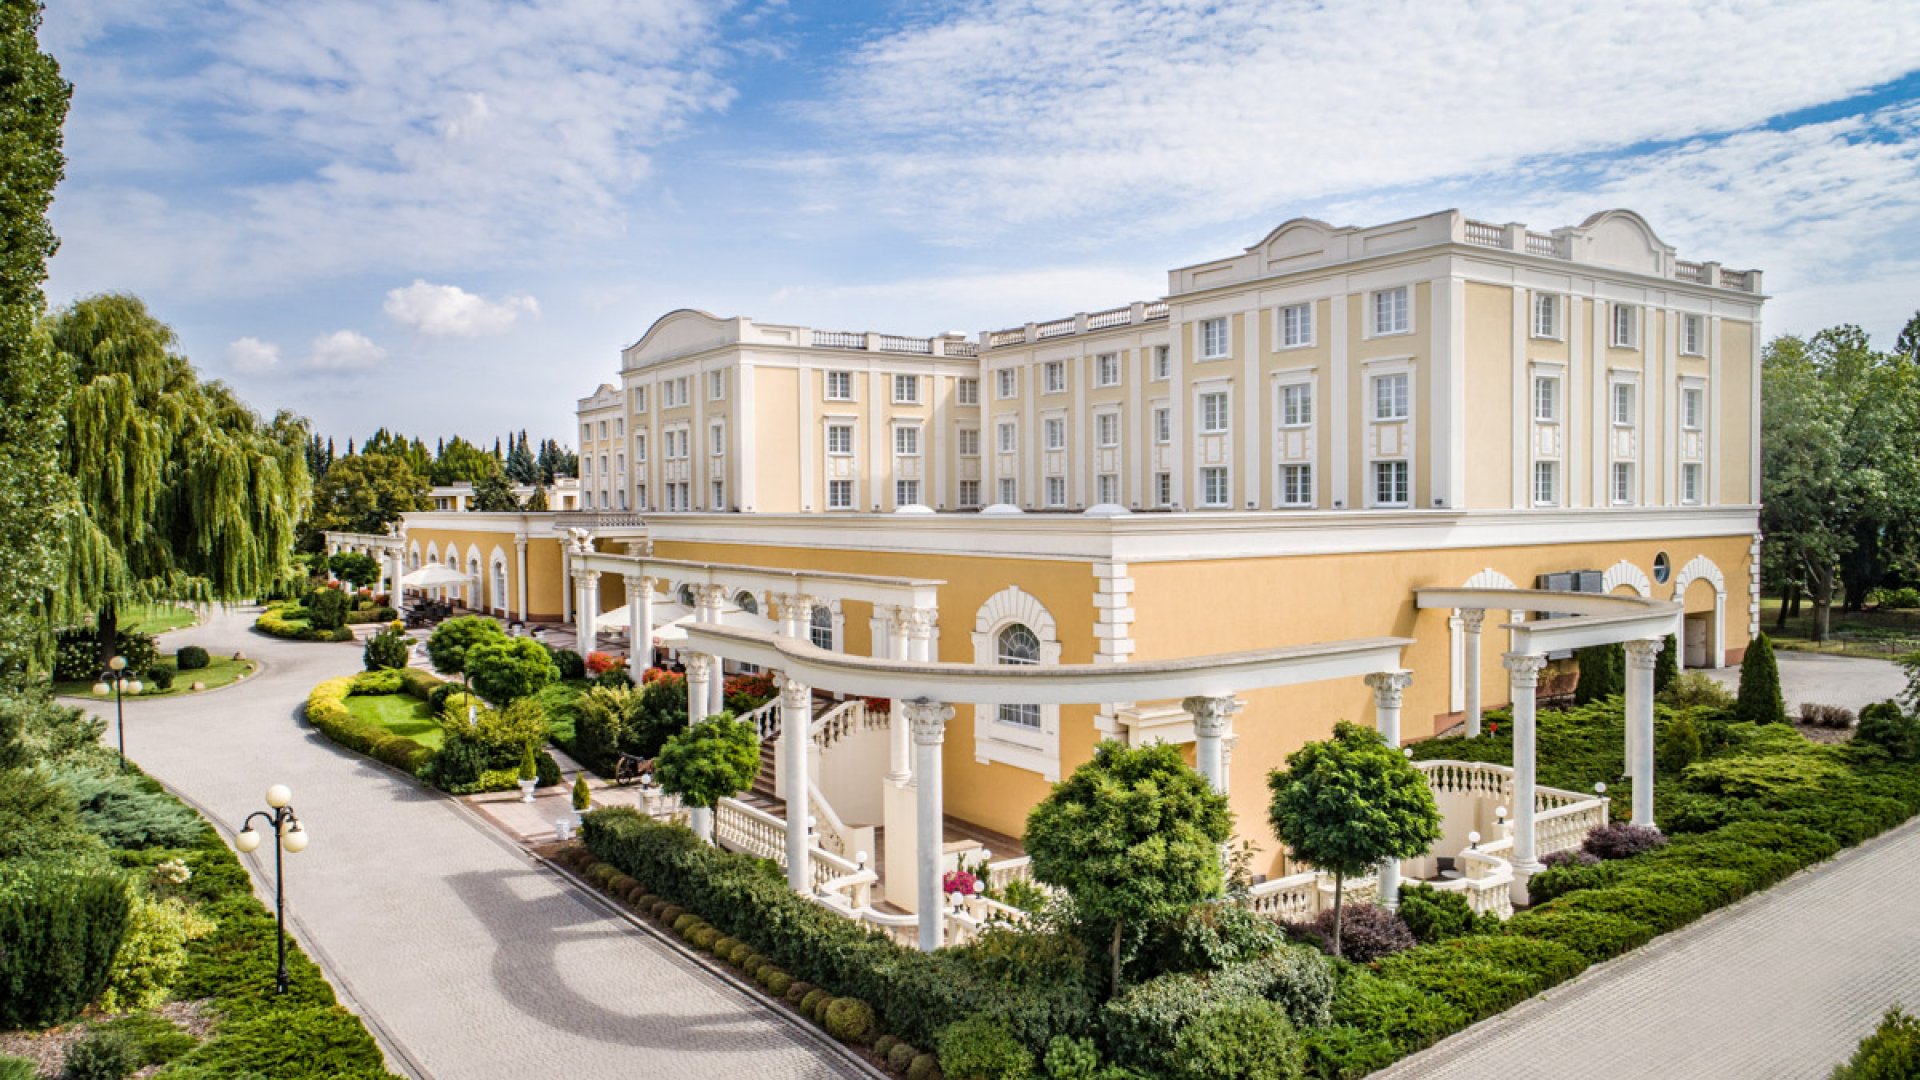 Hotel Windsor - Jachranka k/ Warszawy